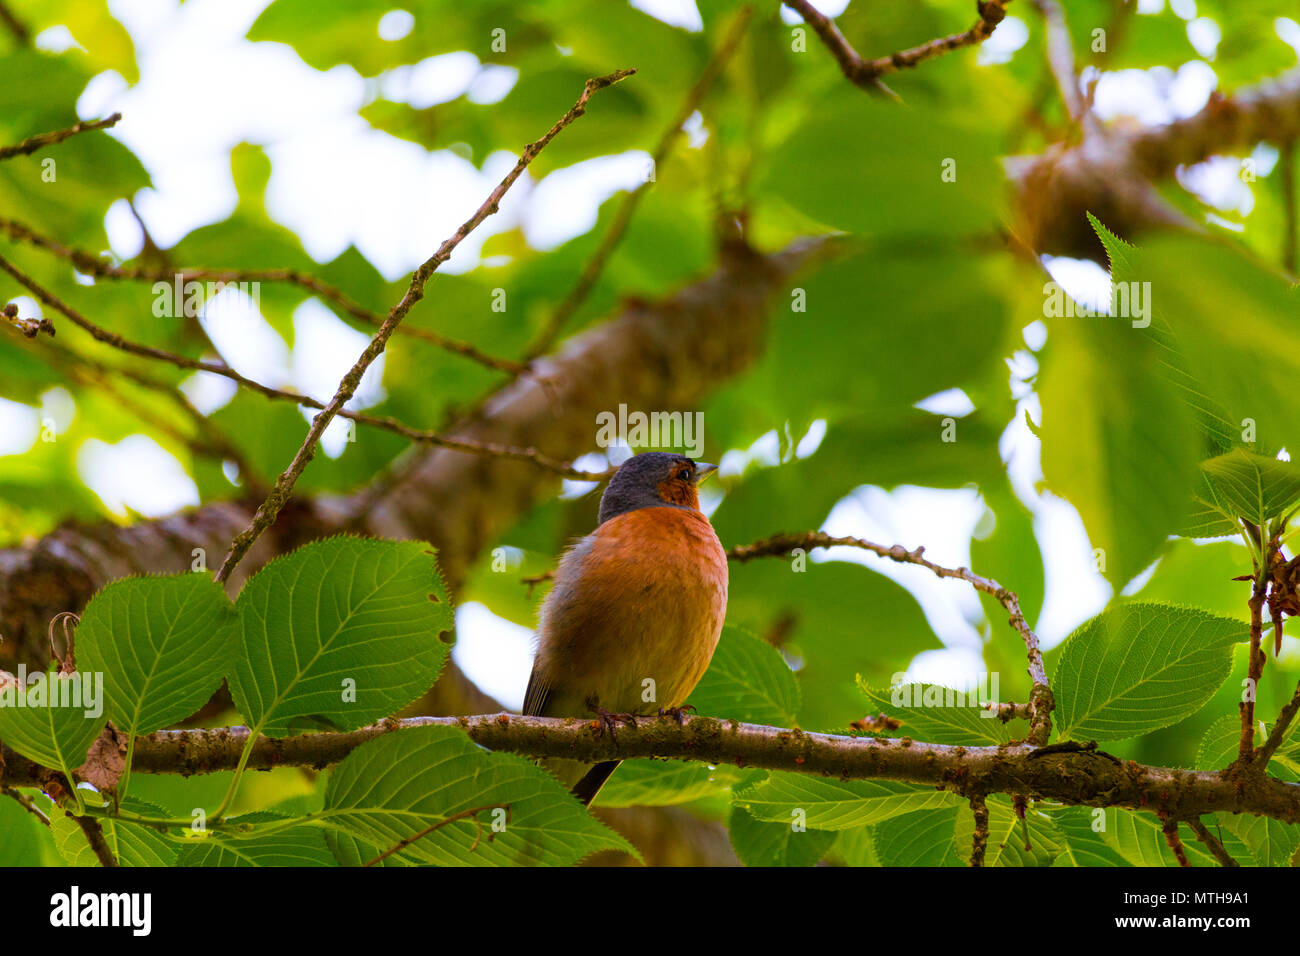 Schöne Fotos von Finch Vogel in seinem natürlichen Lebensraum! Meine andere Seite fängt so zu sehen! Stockfoto